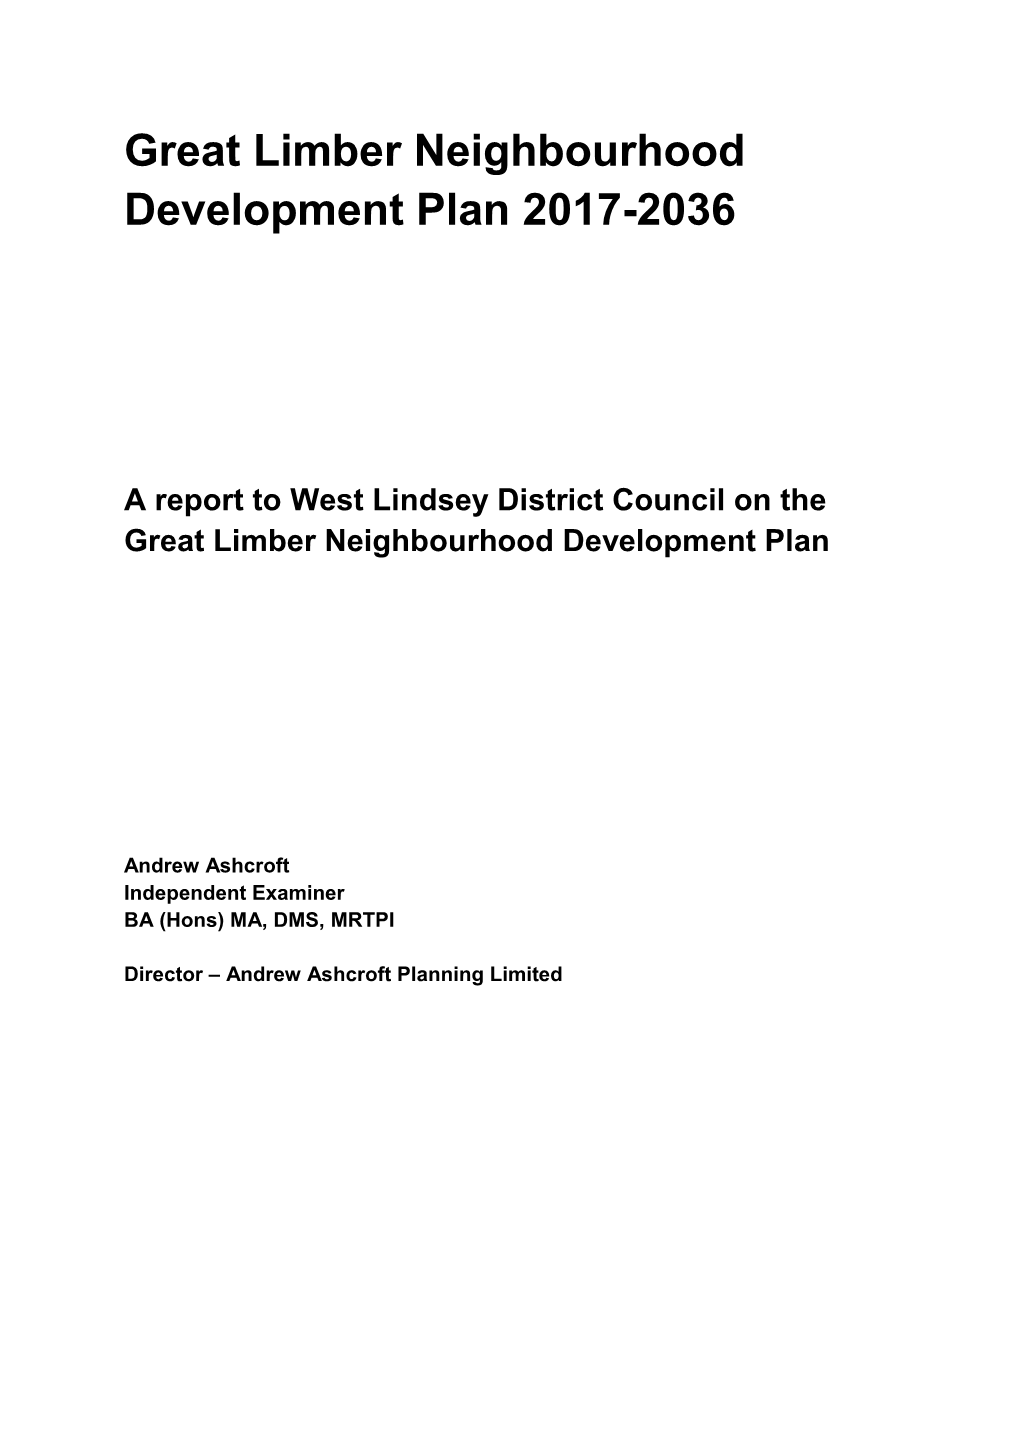 Great Limber Neighbourhood Development Plan 2017-2036